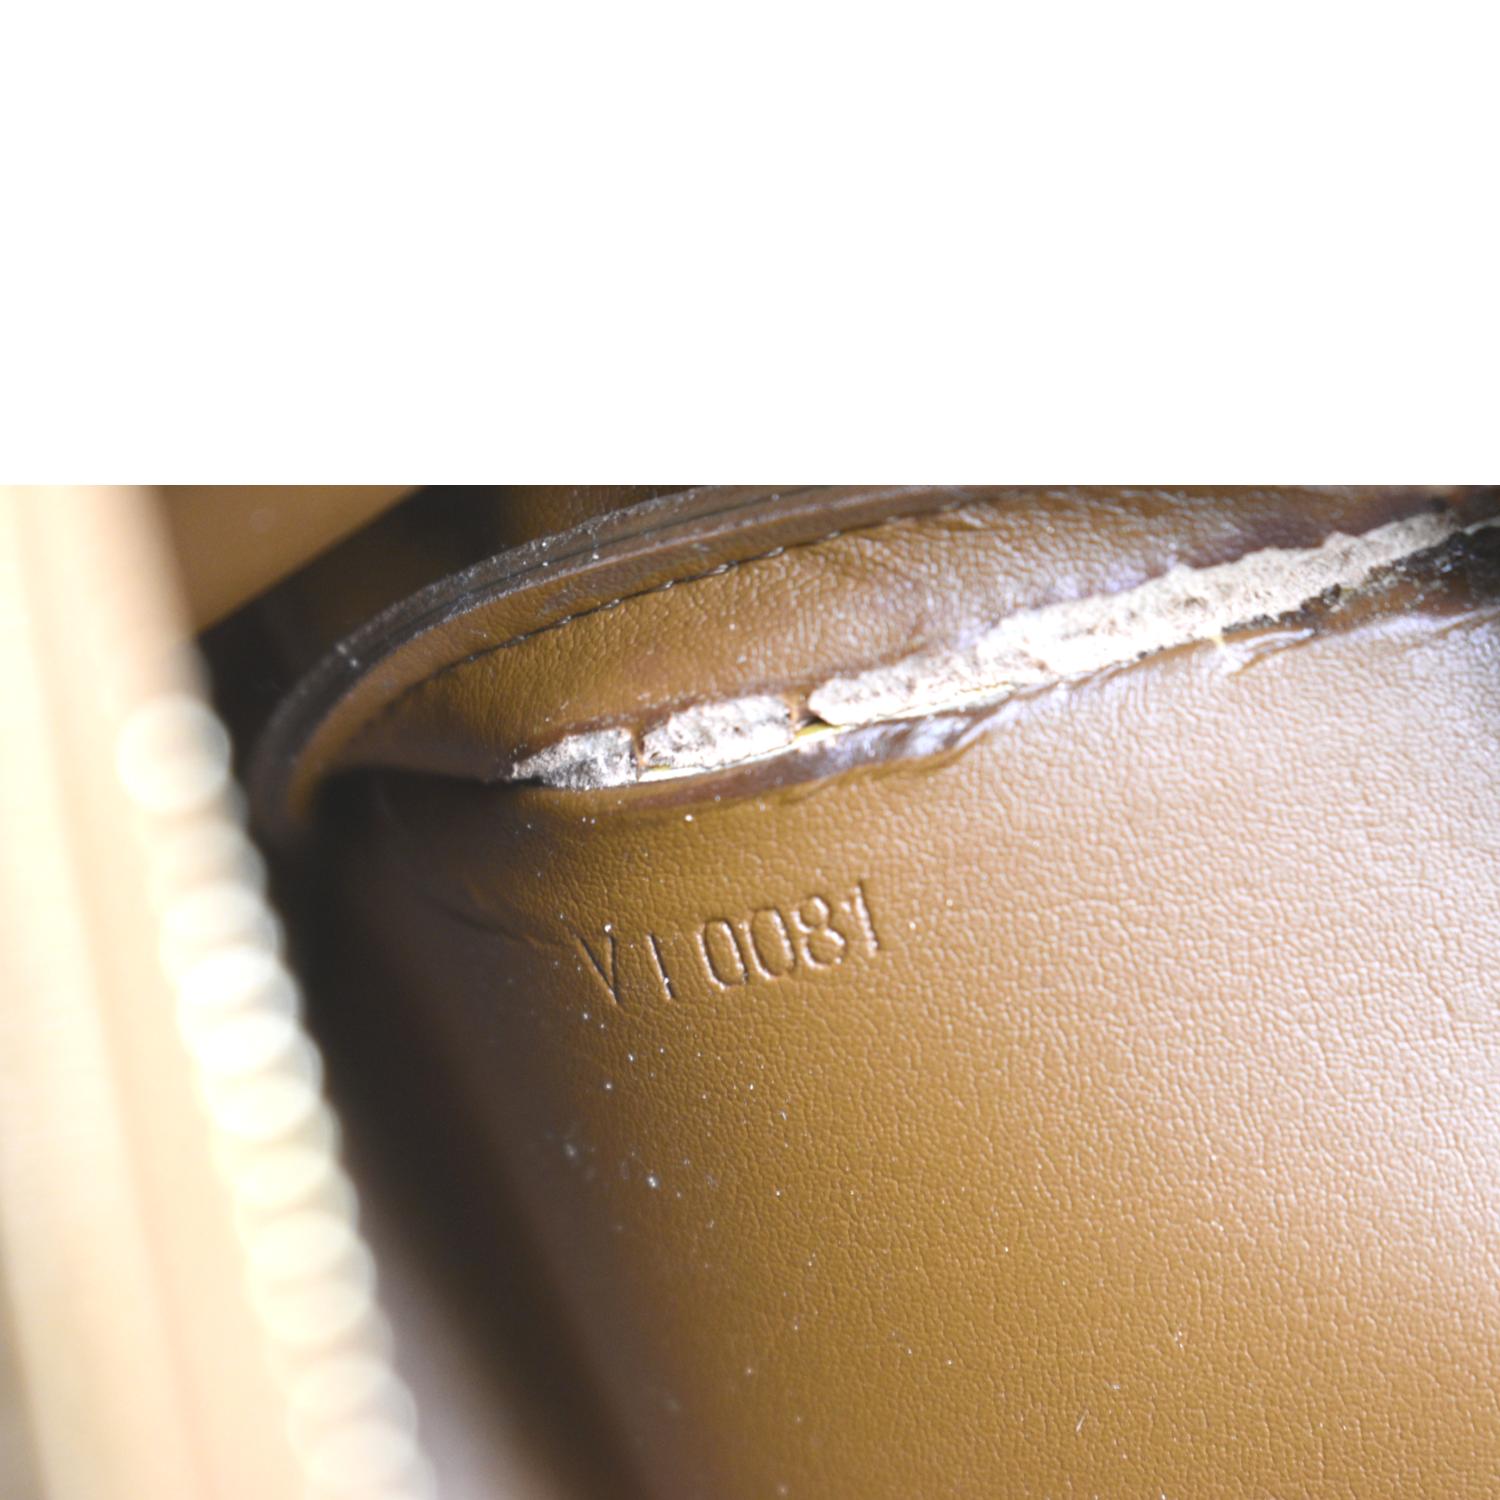 Louis Vuitton Lexington Monogram Vernis Leather Pouch